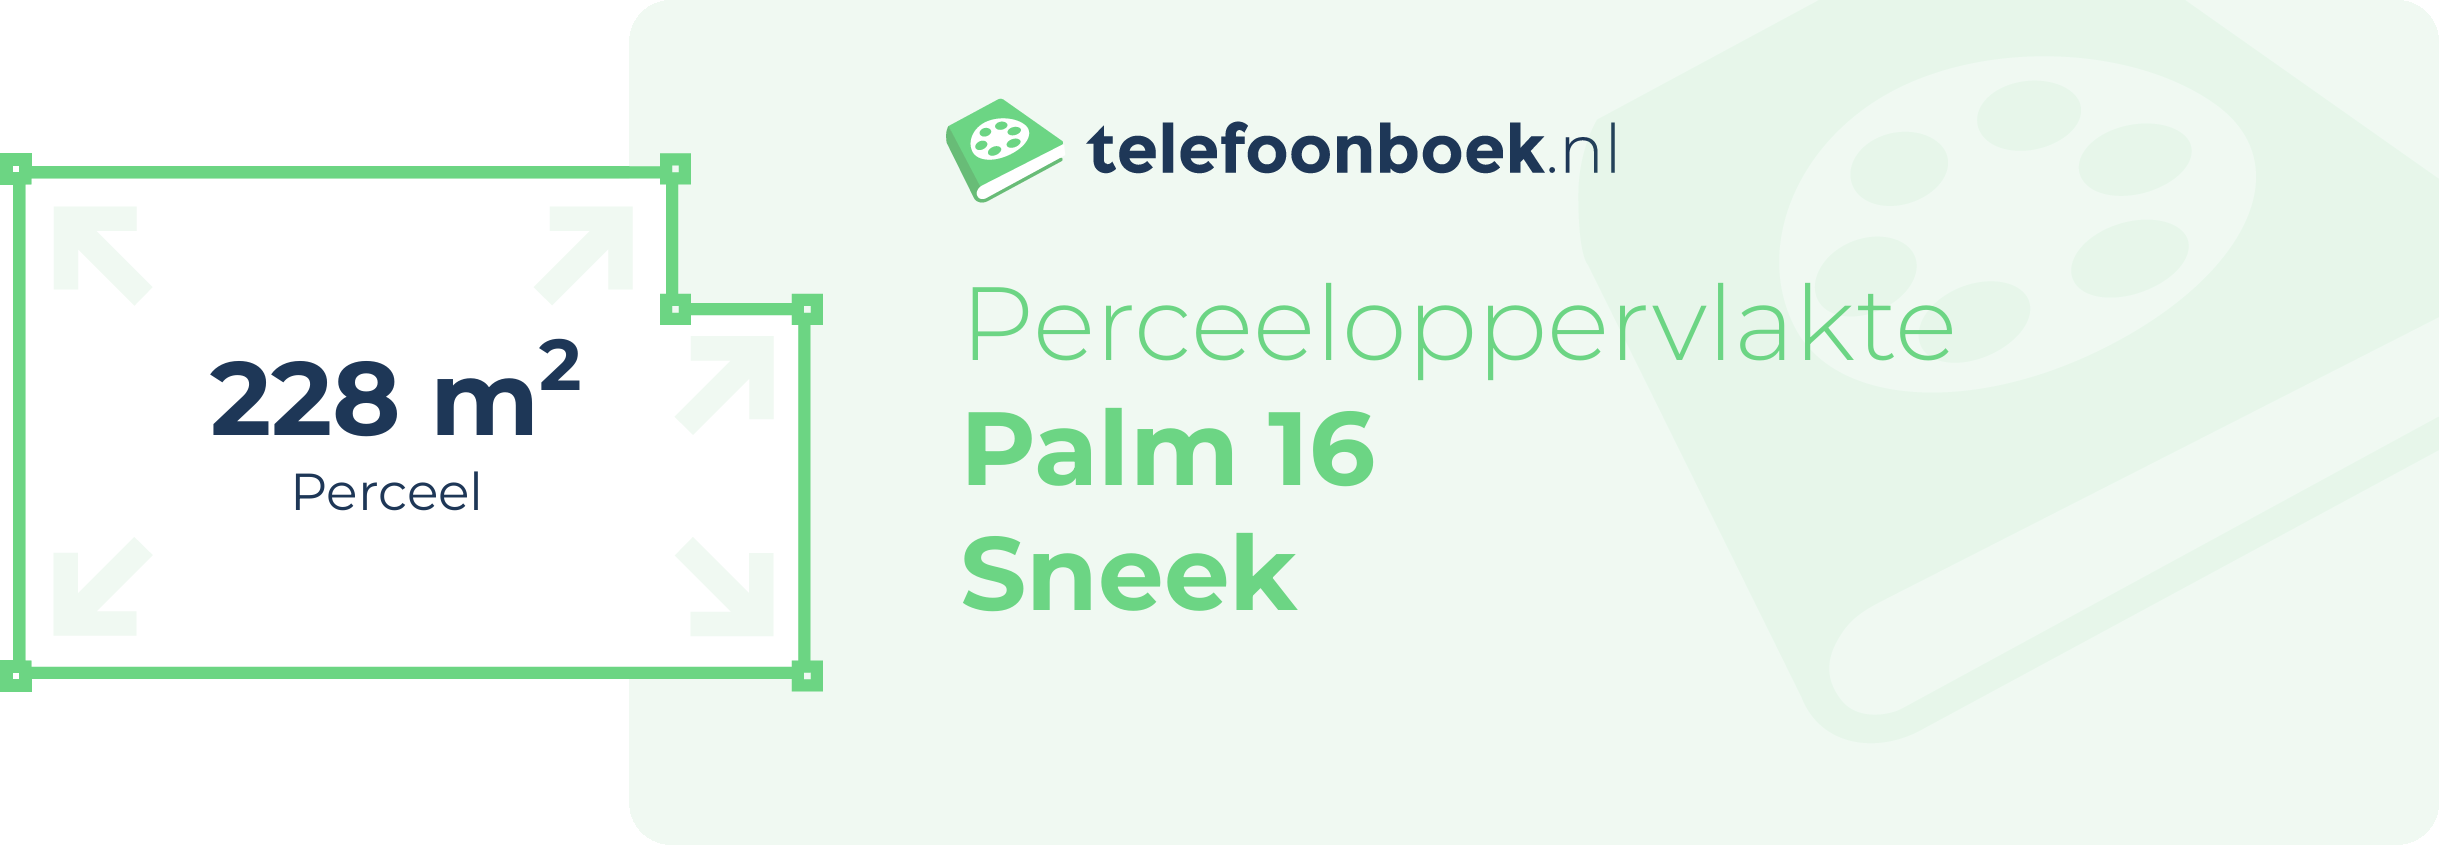 Perceeloppervlakte Palm 16 Sneek